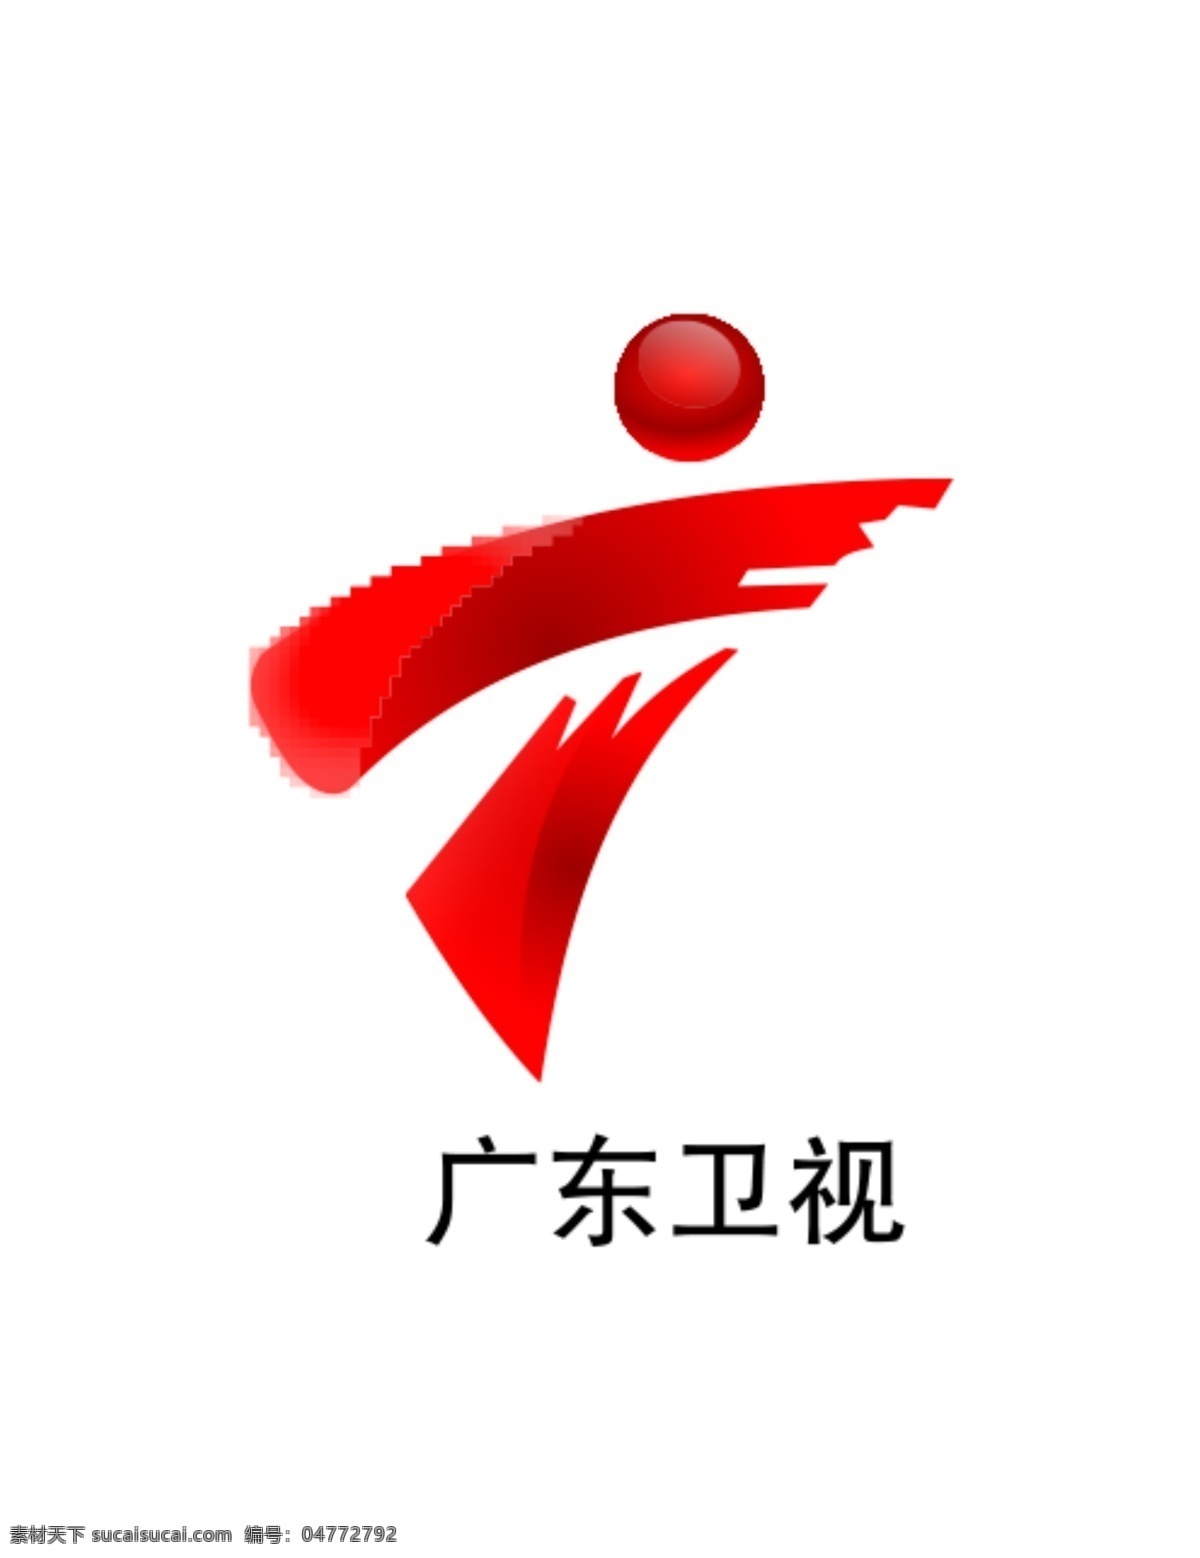 广东卫视标志 广东 卫视 logo 广东卫视台标 广东台标 广东电视台